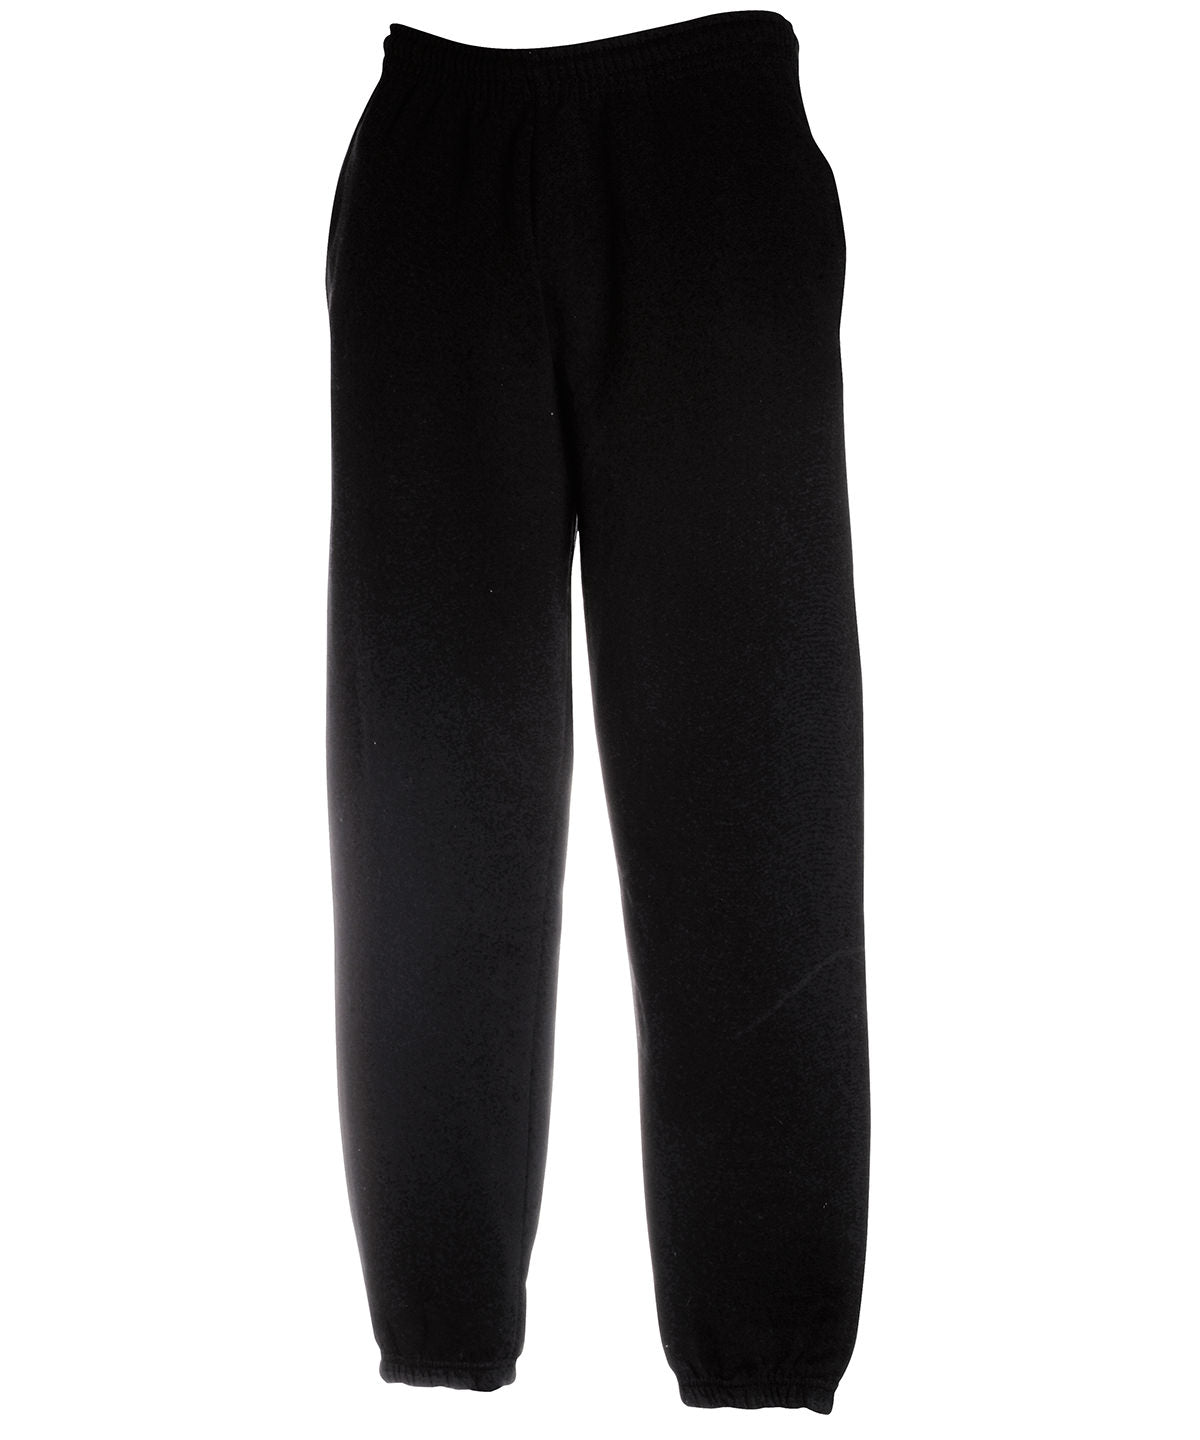 Joggingbuxur - Premium 70/30 Elasticated Sweatpants